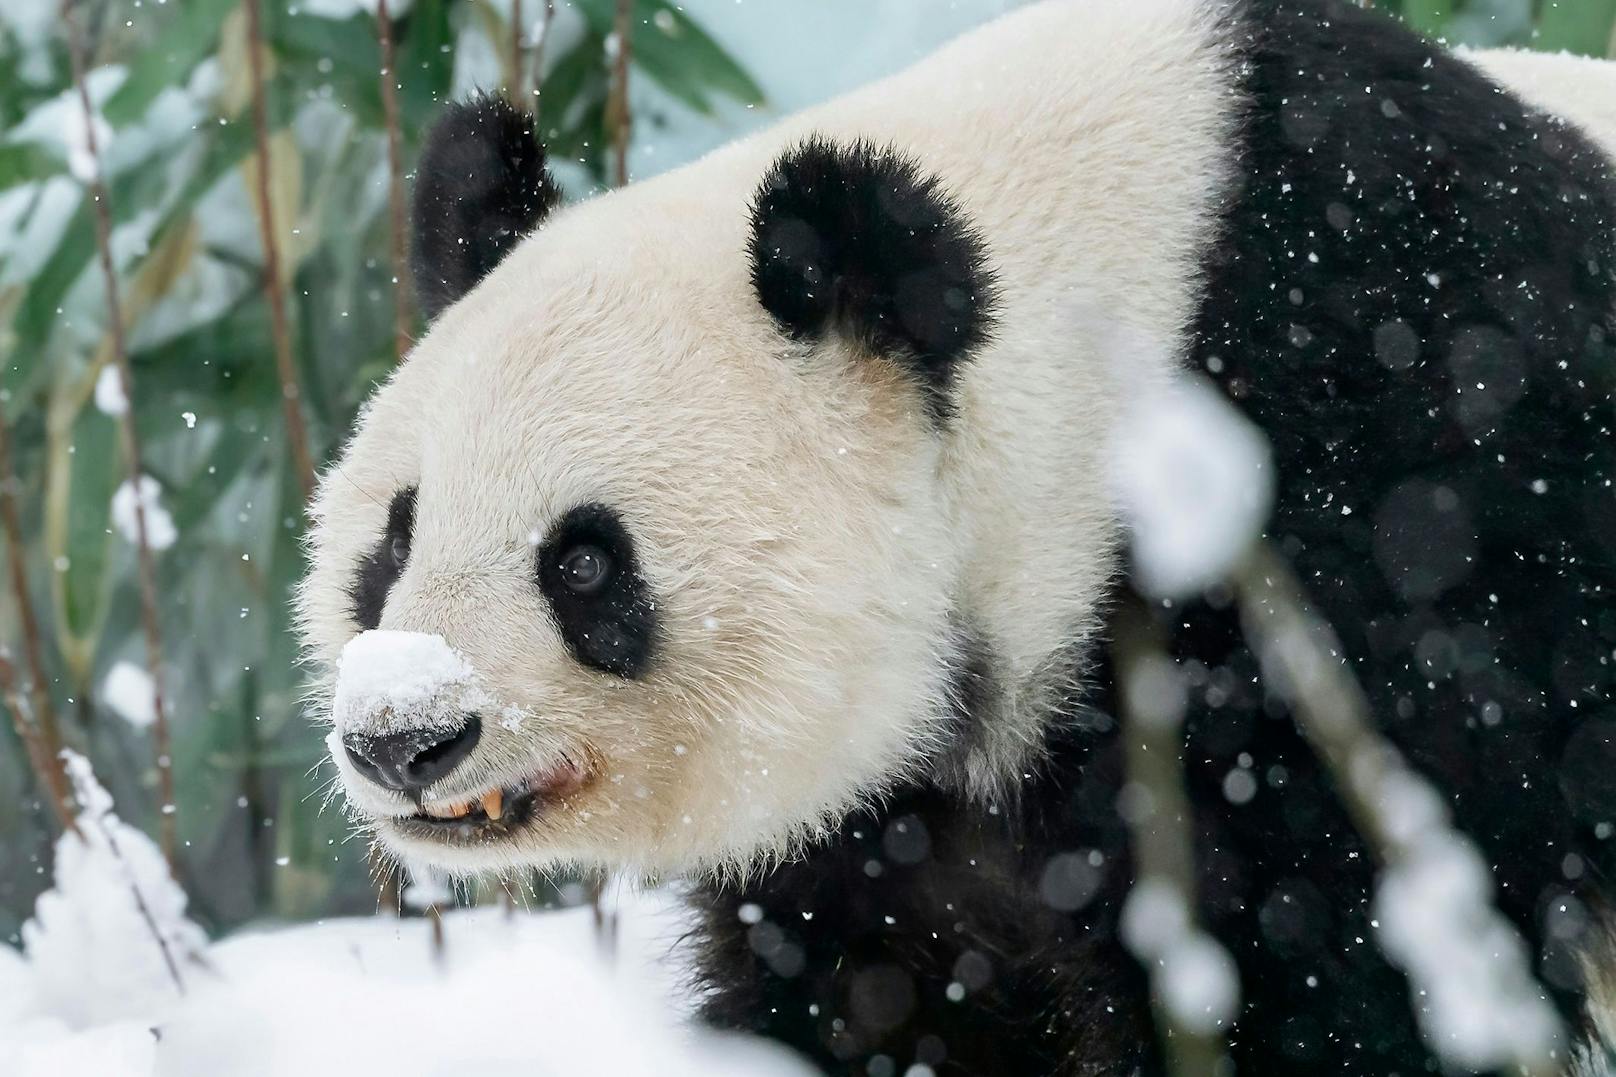 Der große Panda sieht doch putzig aus, mit seinem Schneeschipperl auf der Nase, oder? 